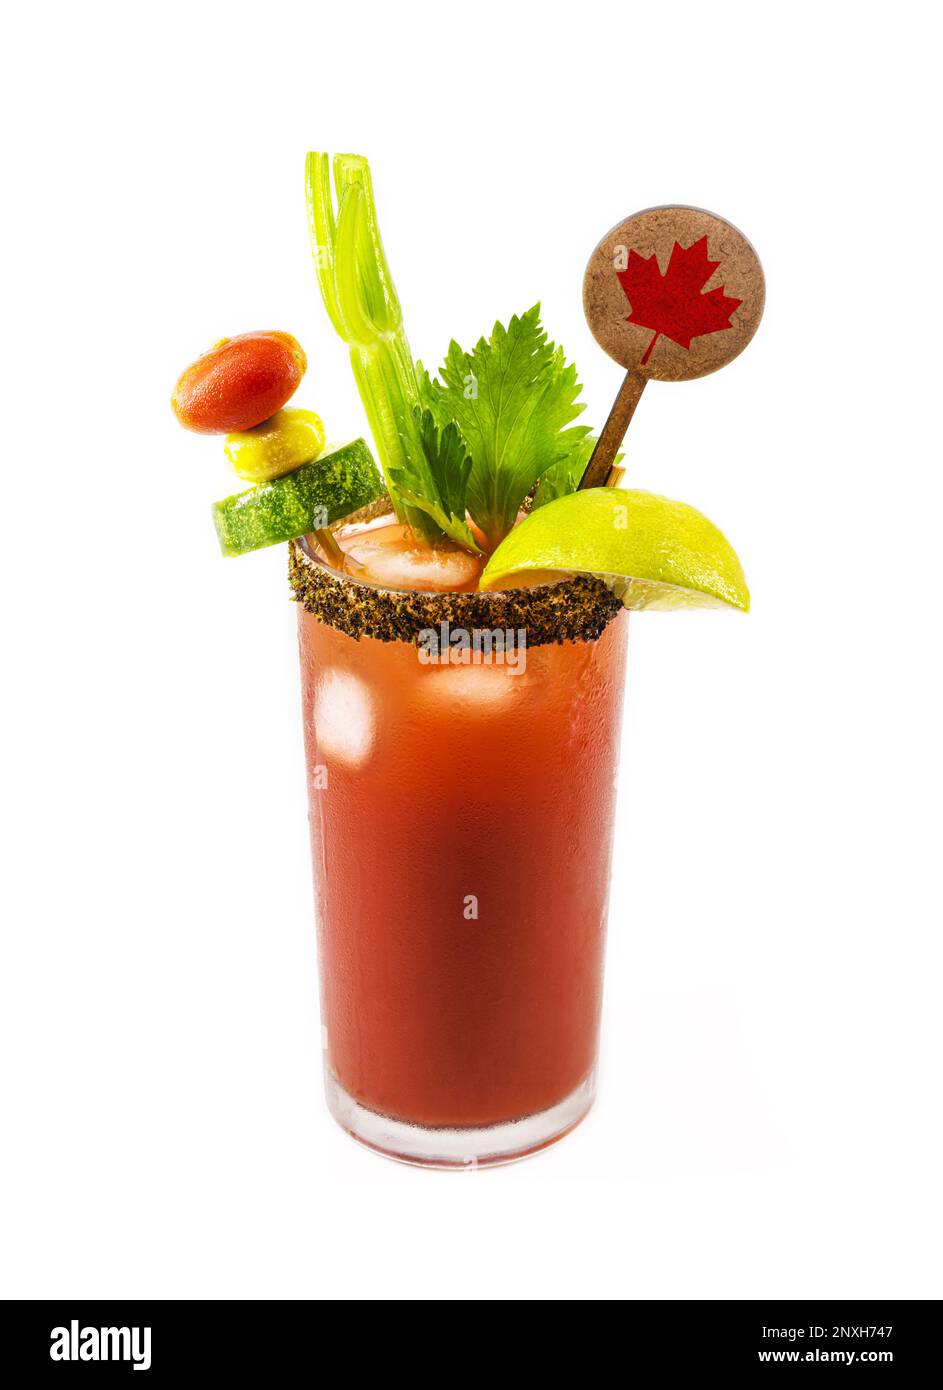 Boisson César canadienne, boisson typiquement canadienne, avec sauce chaude, céleri, citron, vodka et glace. Assiette avec décoration de drapeau canadien Banque D'Images